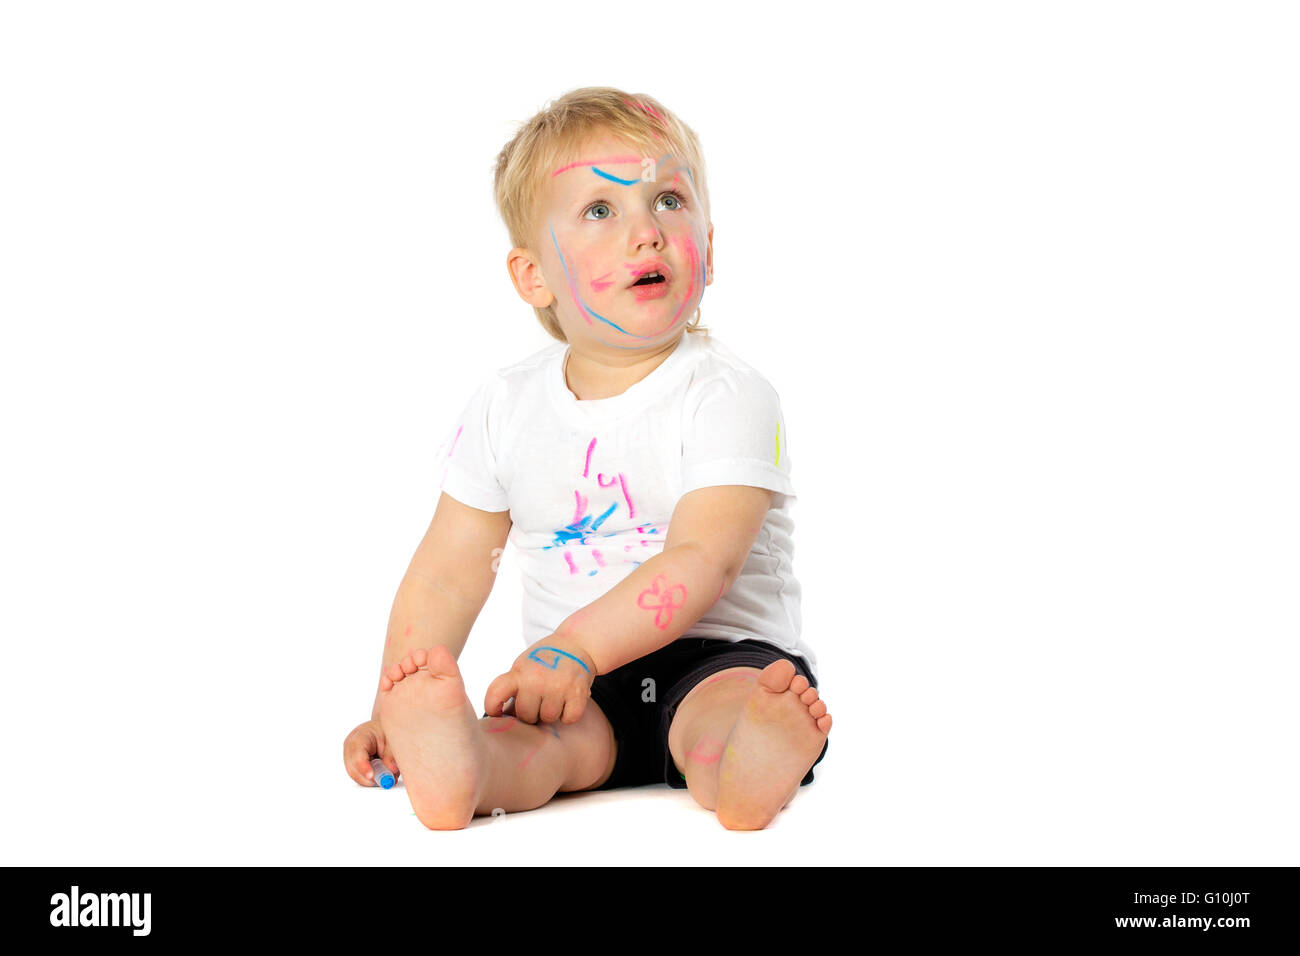 5 anni vecchio ragazzo giocando con la vernice, isolato su bianco Foto Stock